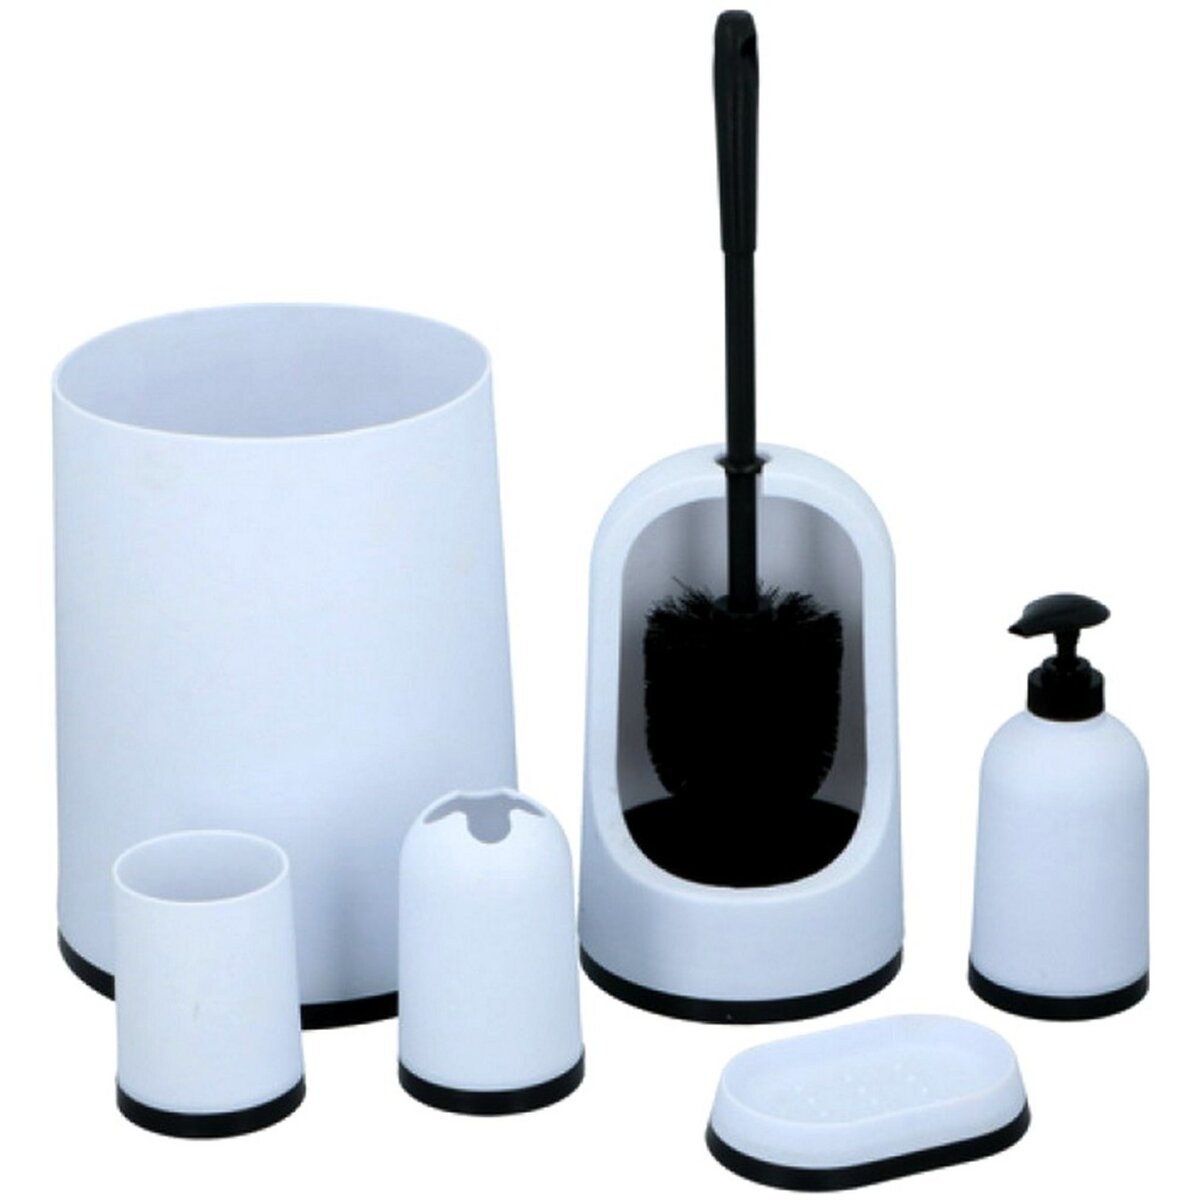 6 accessoires de salle de bain toilette brosse poubelle savon N